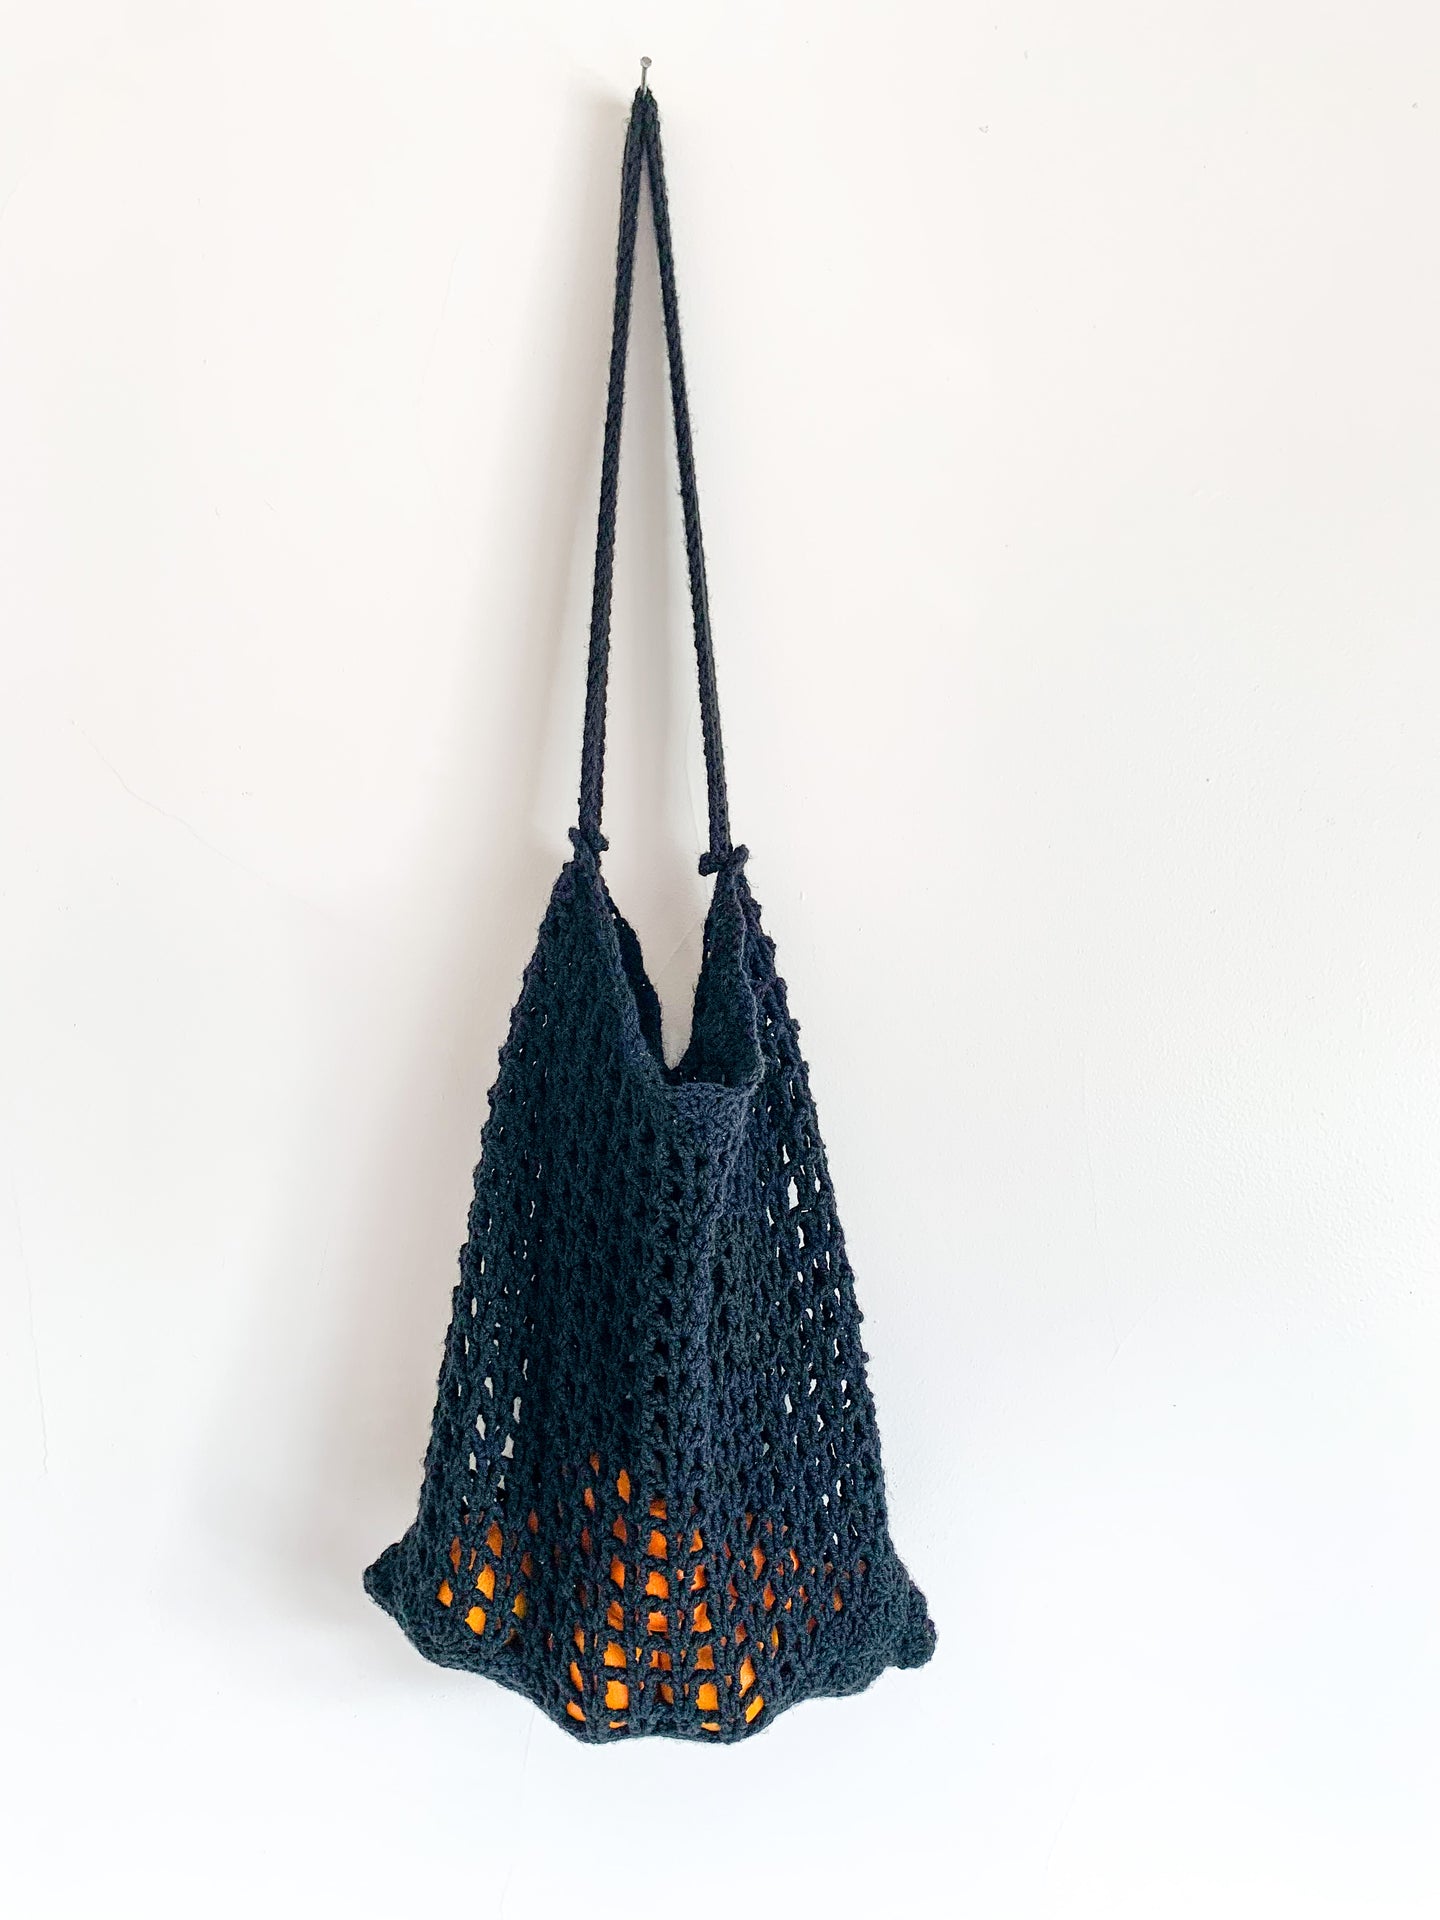 Crochet Black Shopping Bag